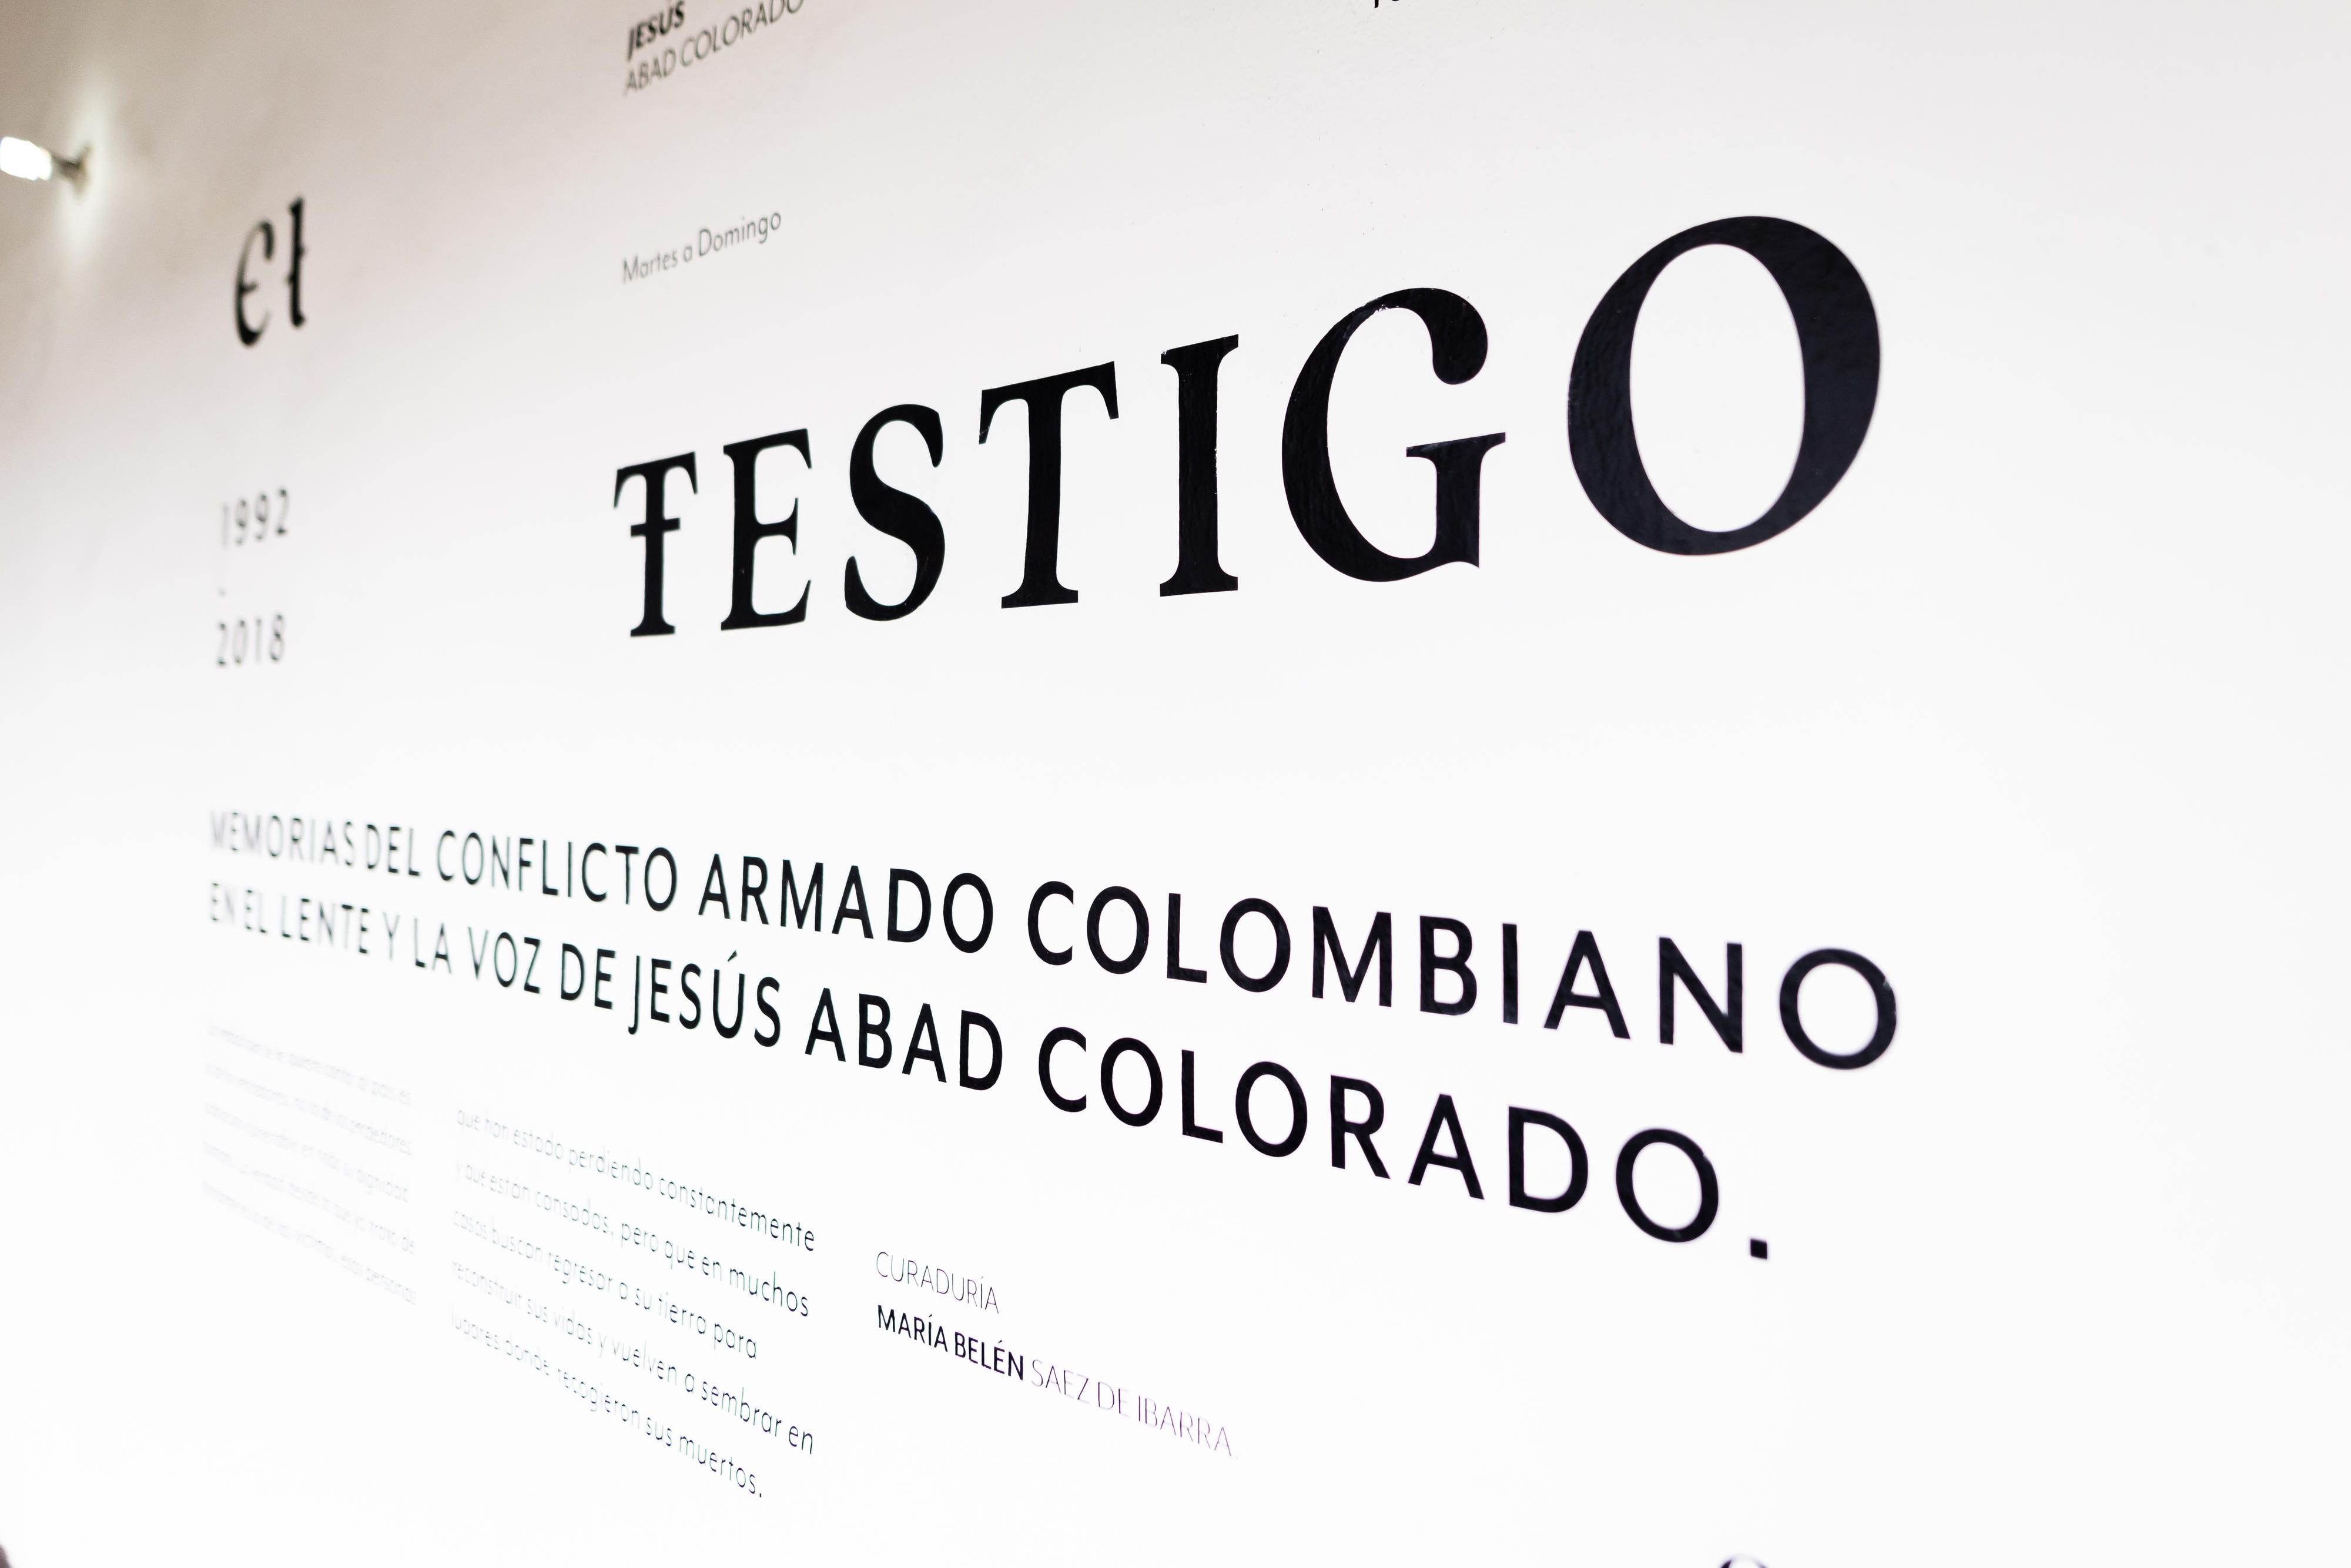 Foto-Ausstellung "El Testigo" (Der Zeuge) im Kloster San Augustín in Bogotá, in der Fotos des Künstlers Jesús Abad zum bewaffneten Konflikt in Kolumbien zu sehen sind